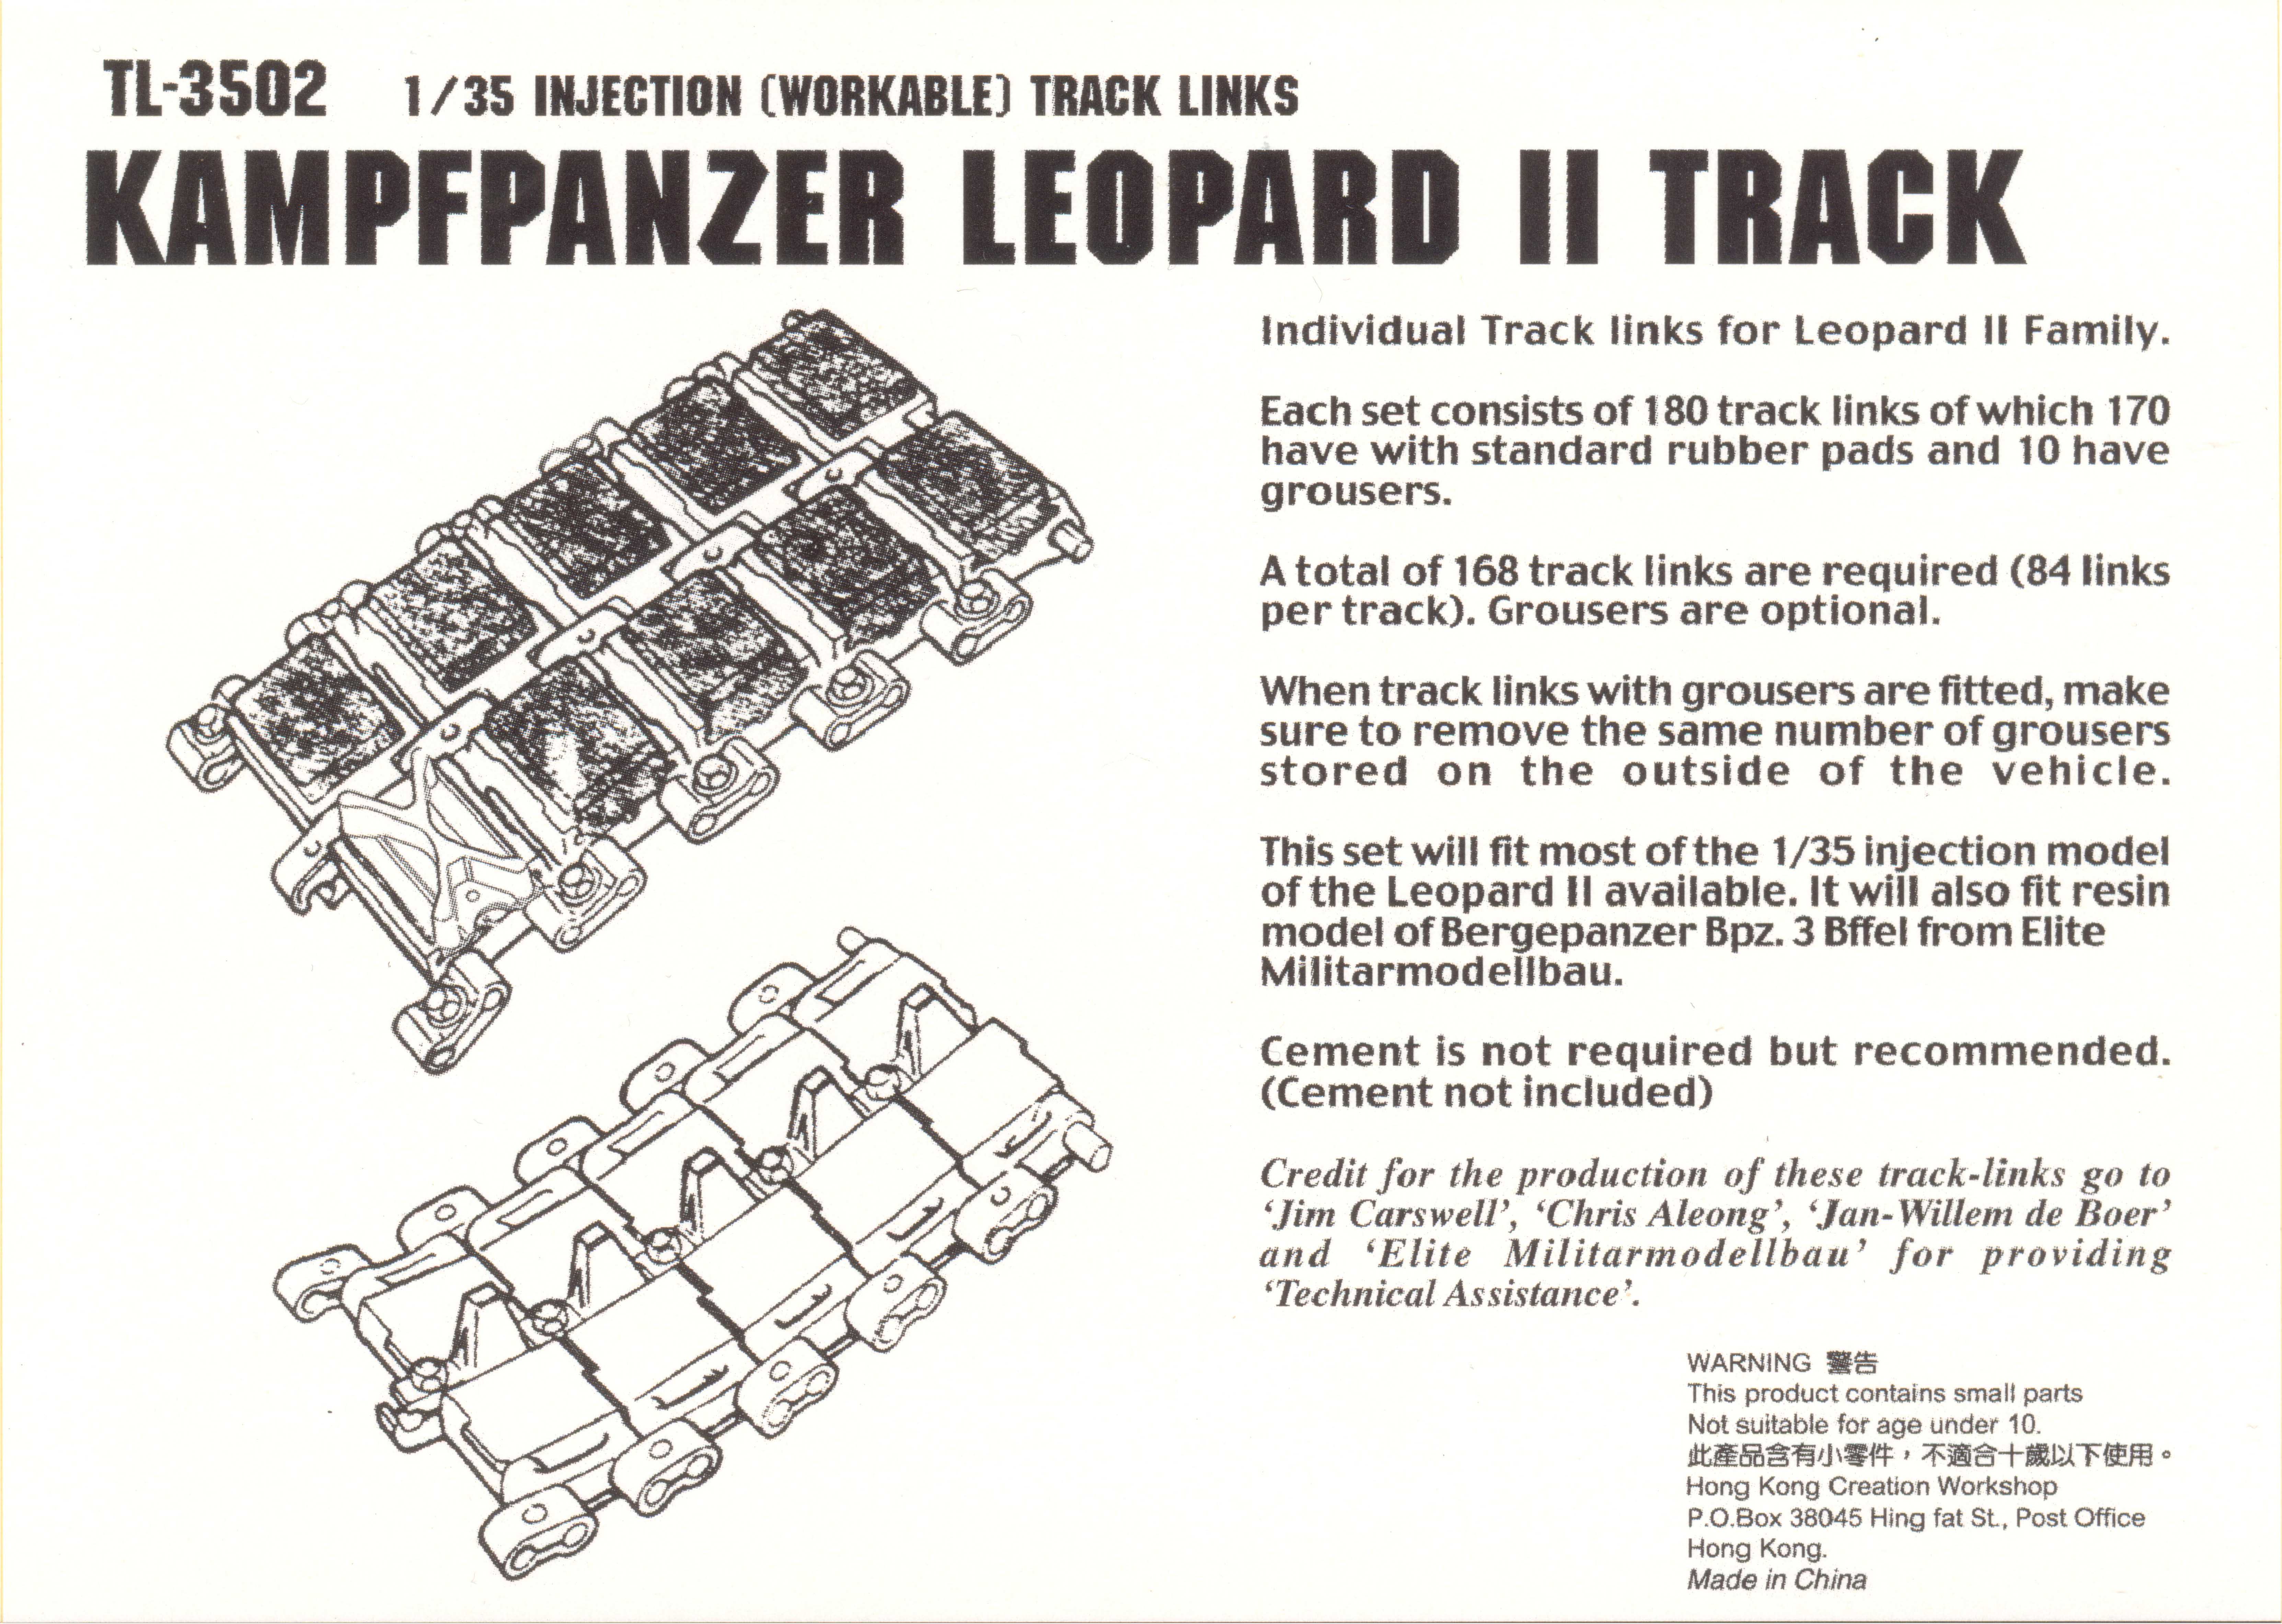 TL-3502 Kampfpanzer Leopard II Track